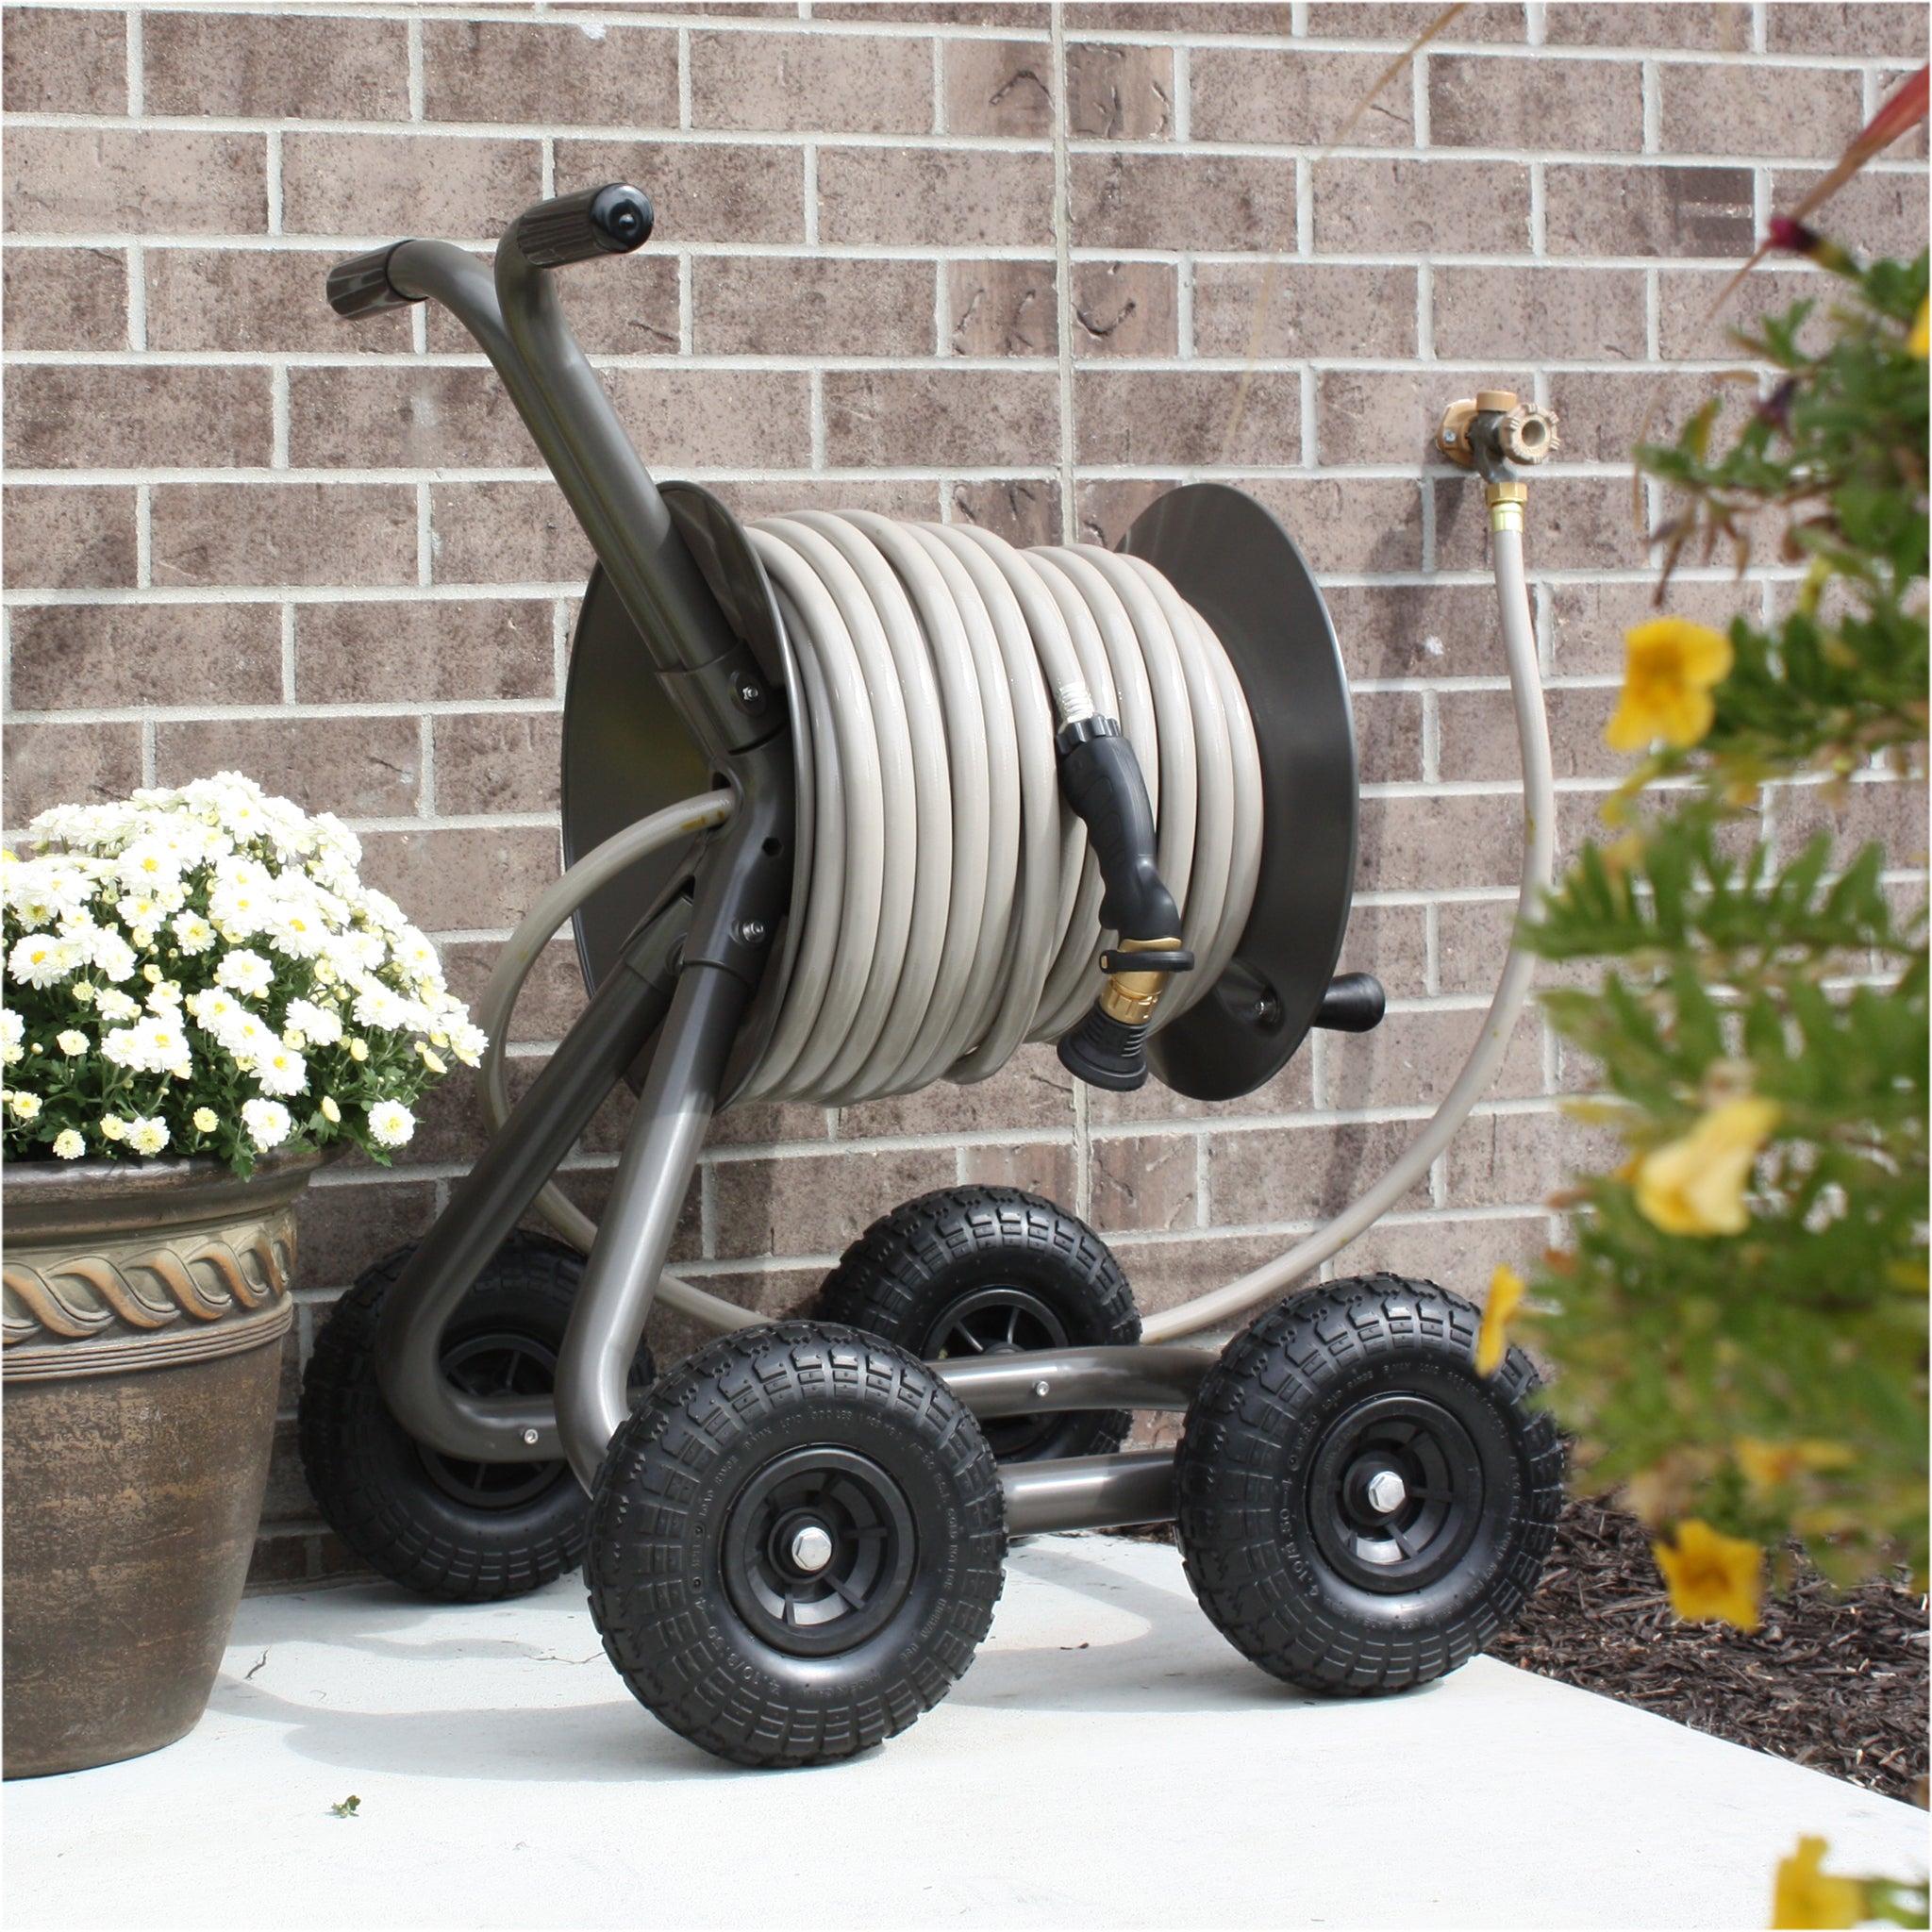 Ashman Garden Hose Reel Cart 4 Wheels Portable Garden Hose Reel